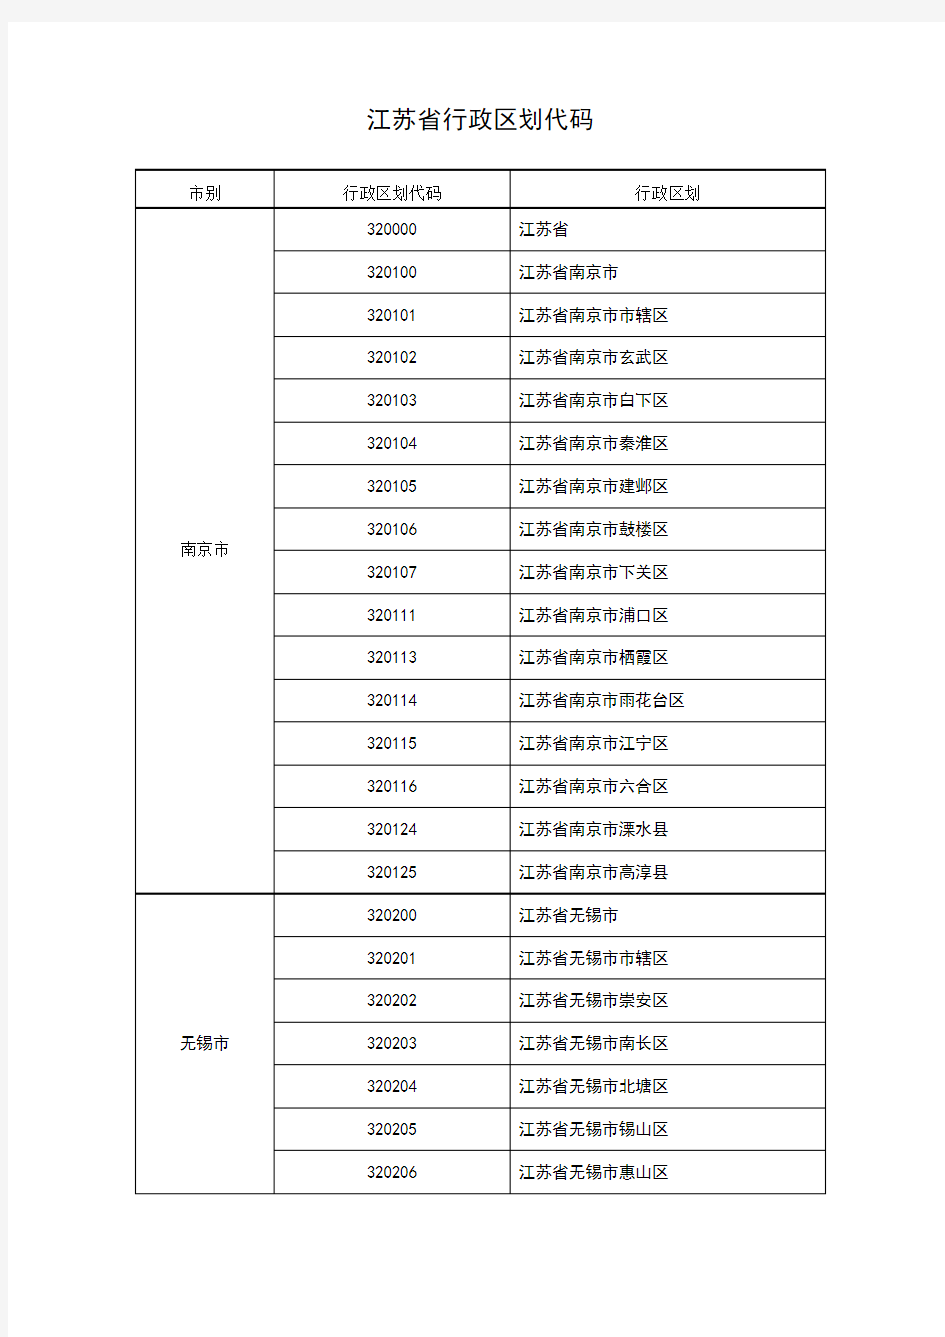 江苏省行政区划代码